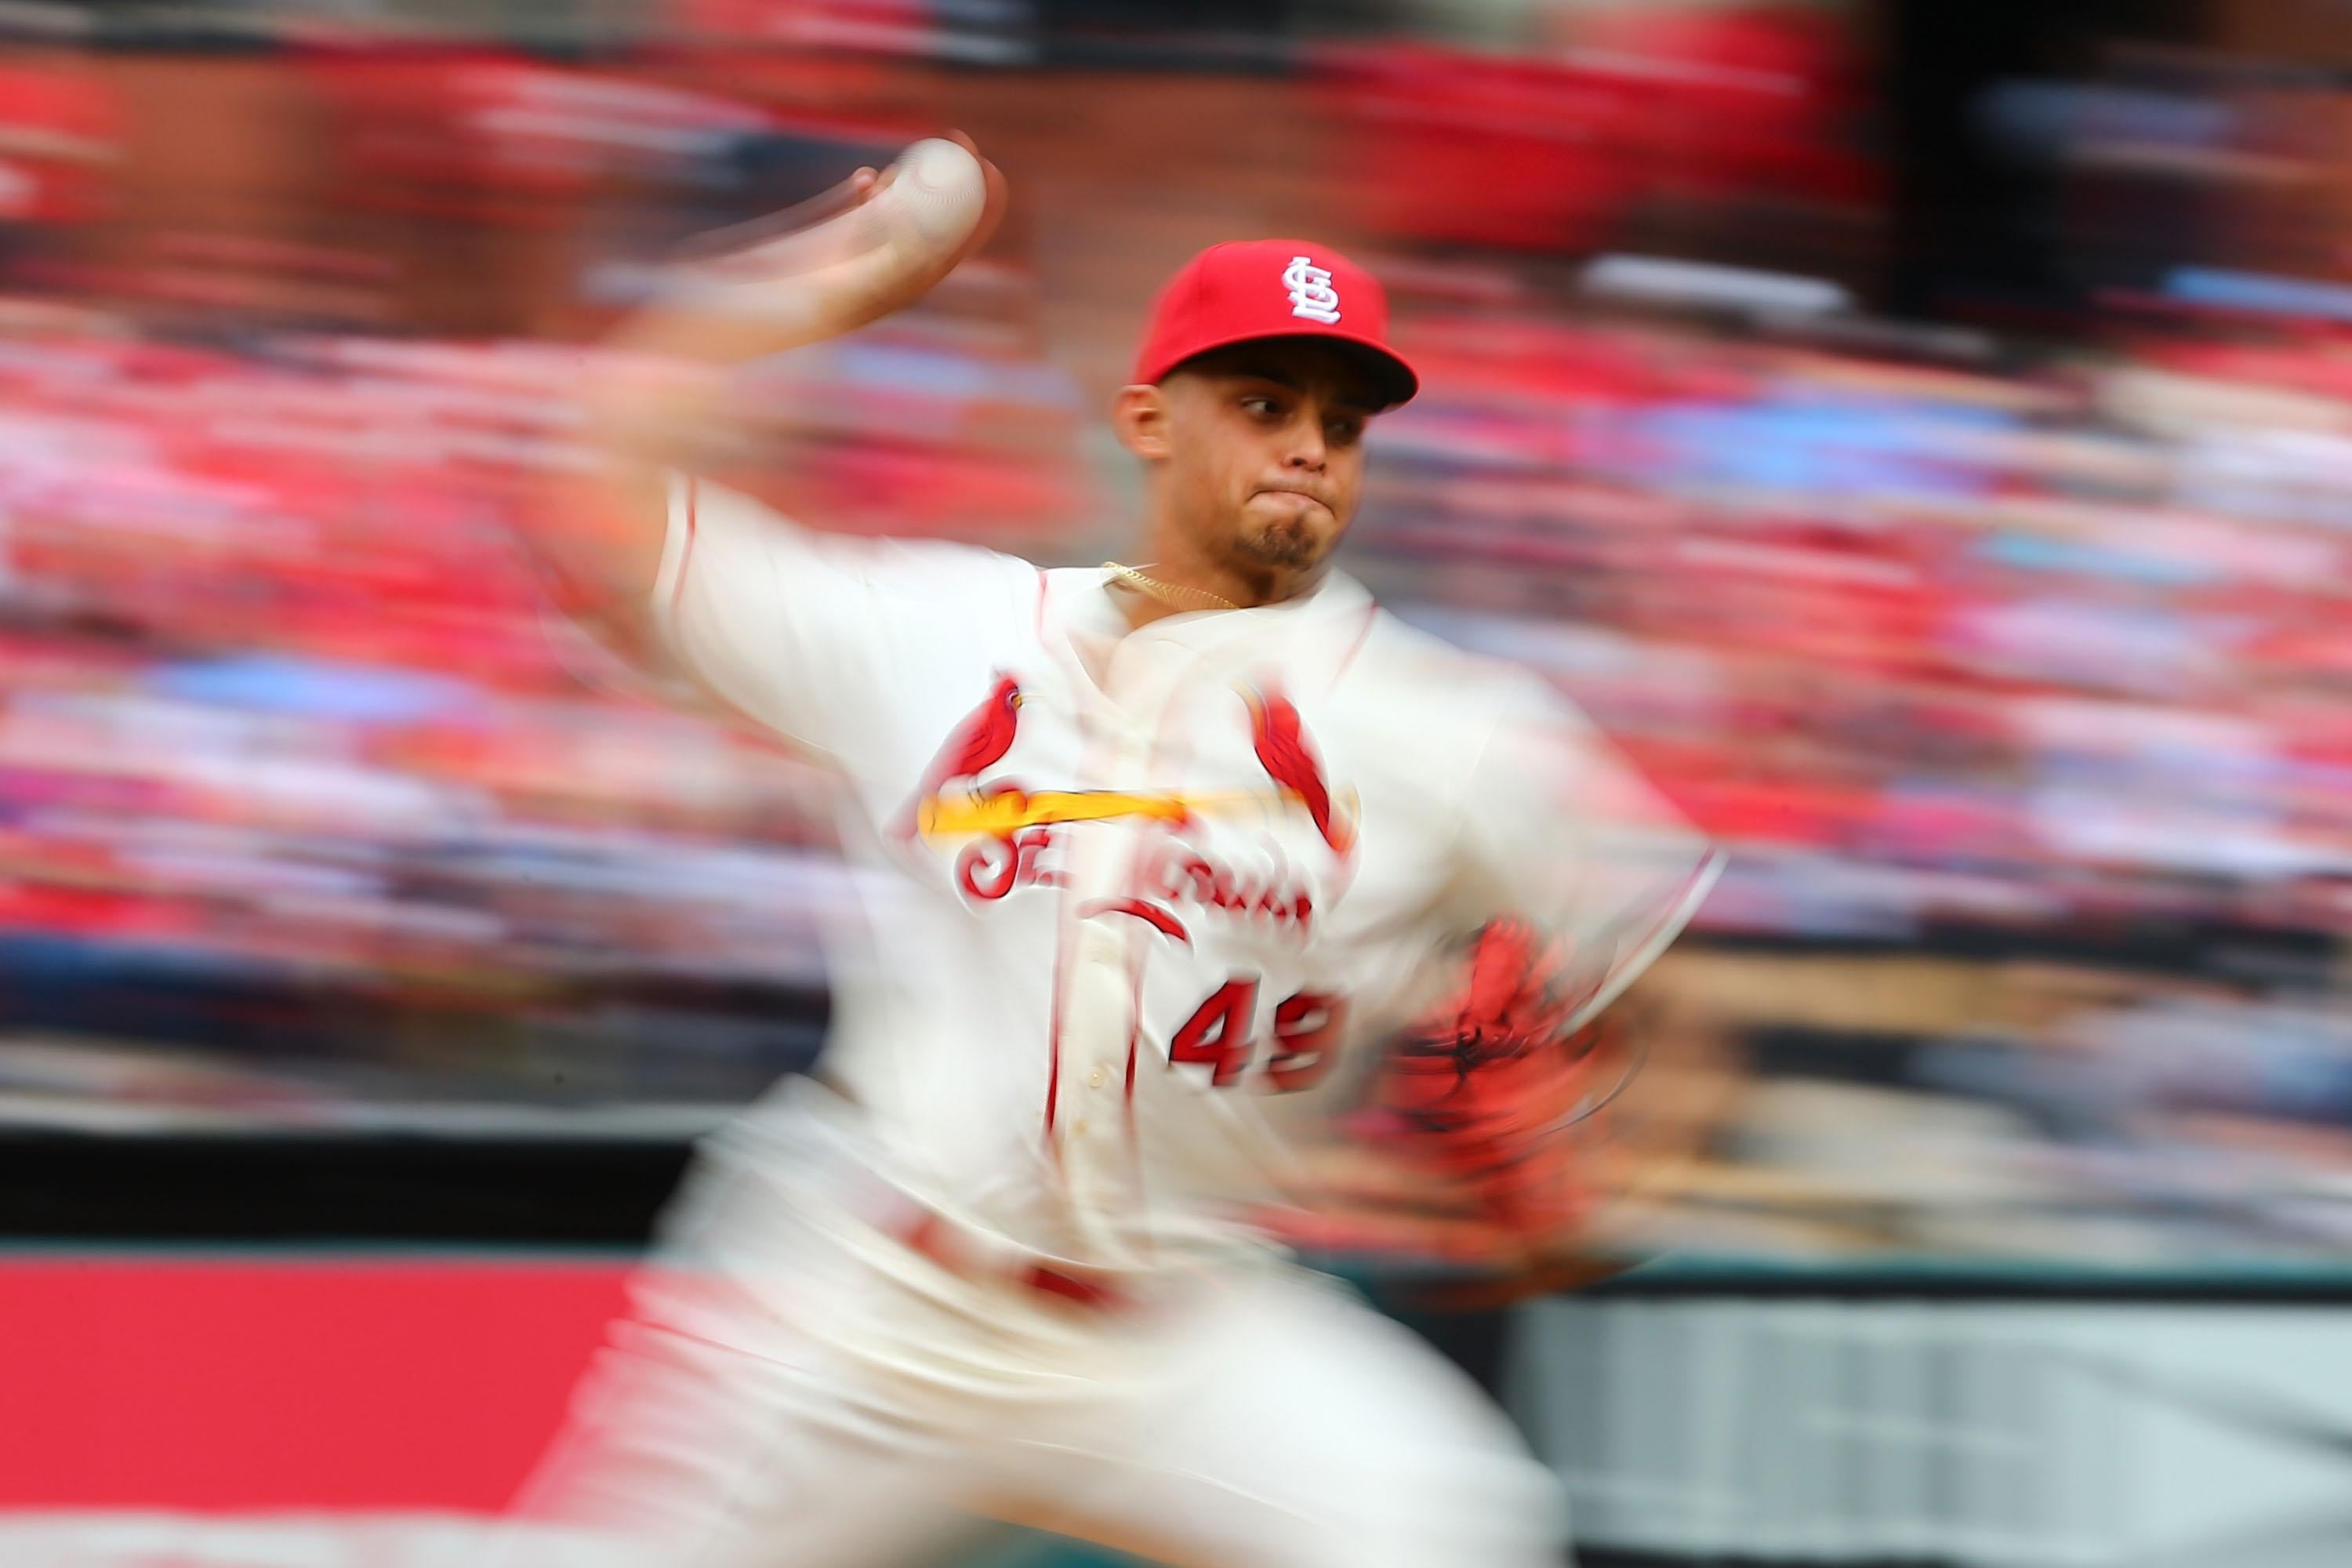 Watch Cardinals' Jordan Hicks throw 105 miles per hour.